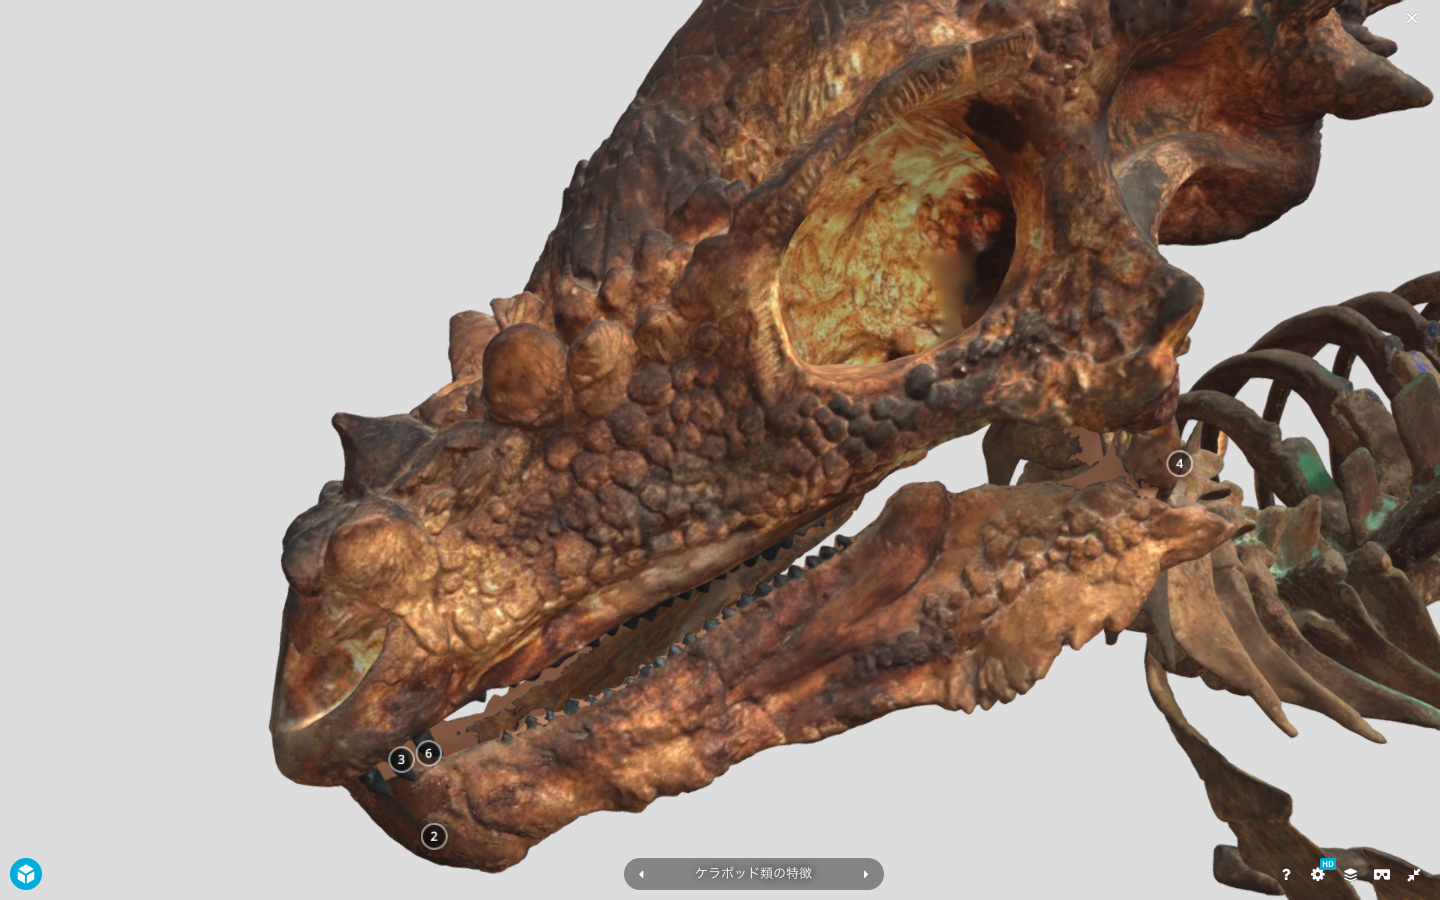 パキケファロサウルスのデジタルモデルは、質感がリアル！